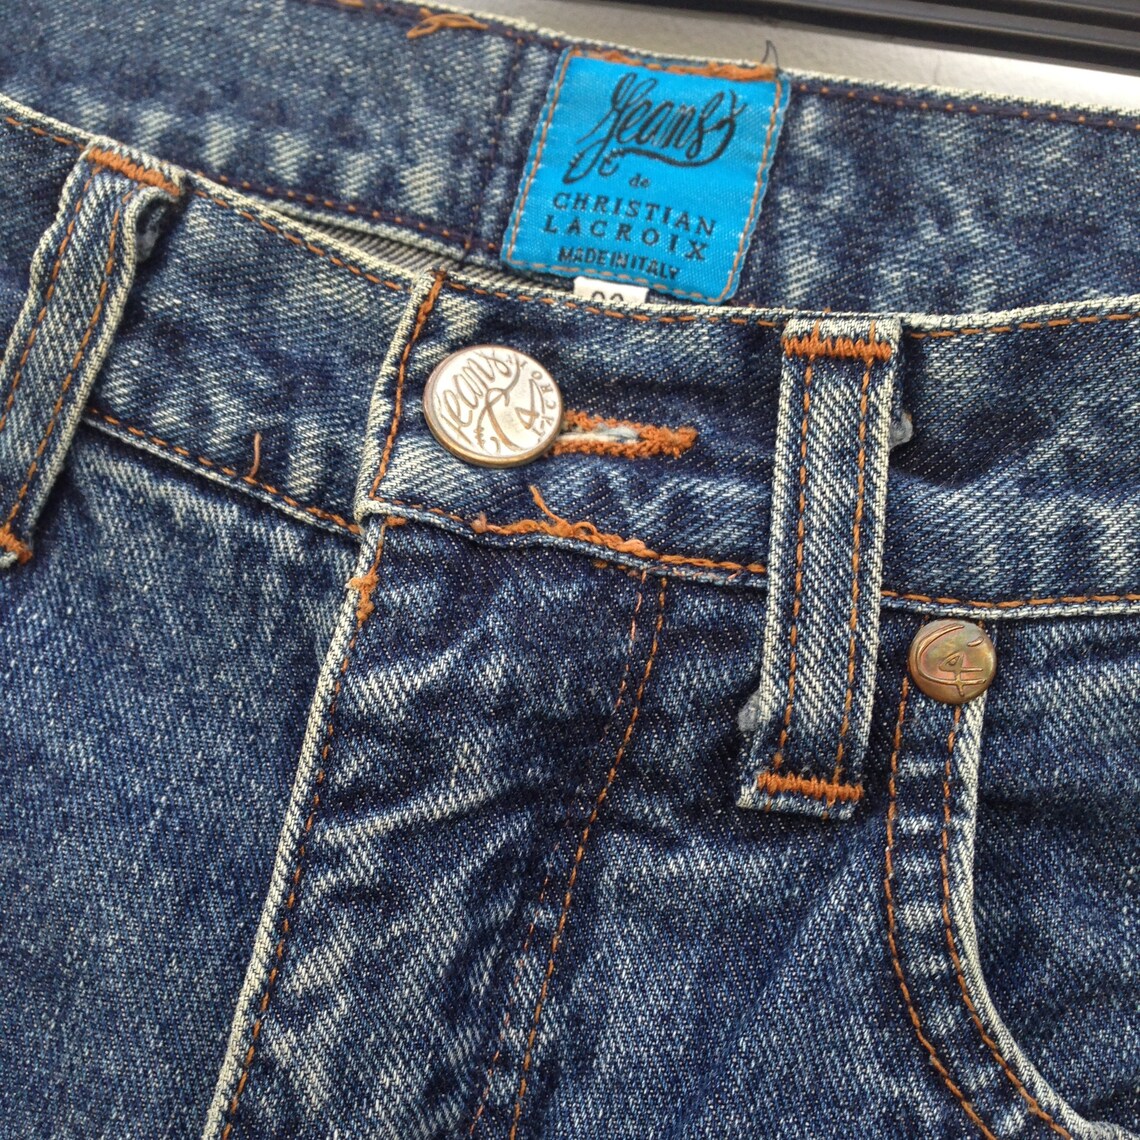 Christian Lacroix Vintage 1980s Jeans Denim pants | Etsy